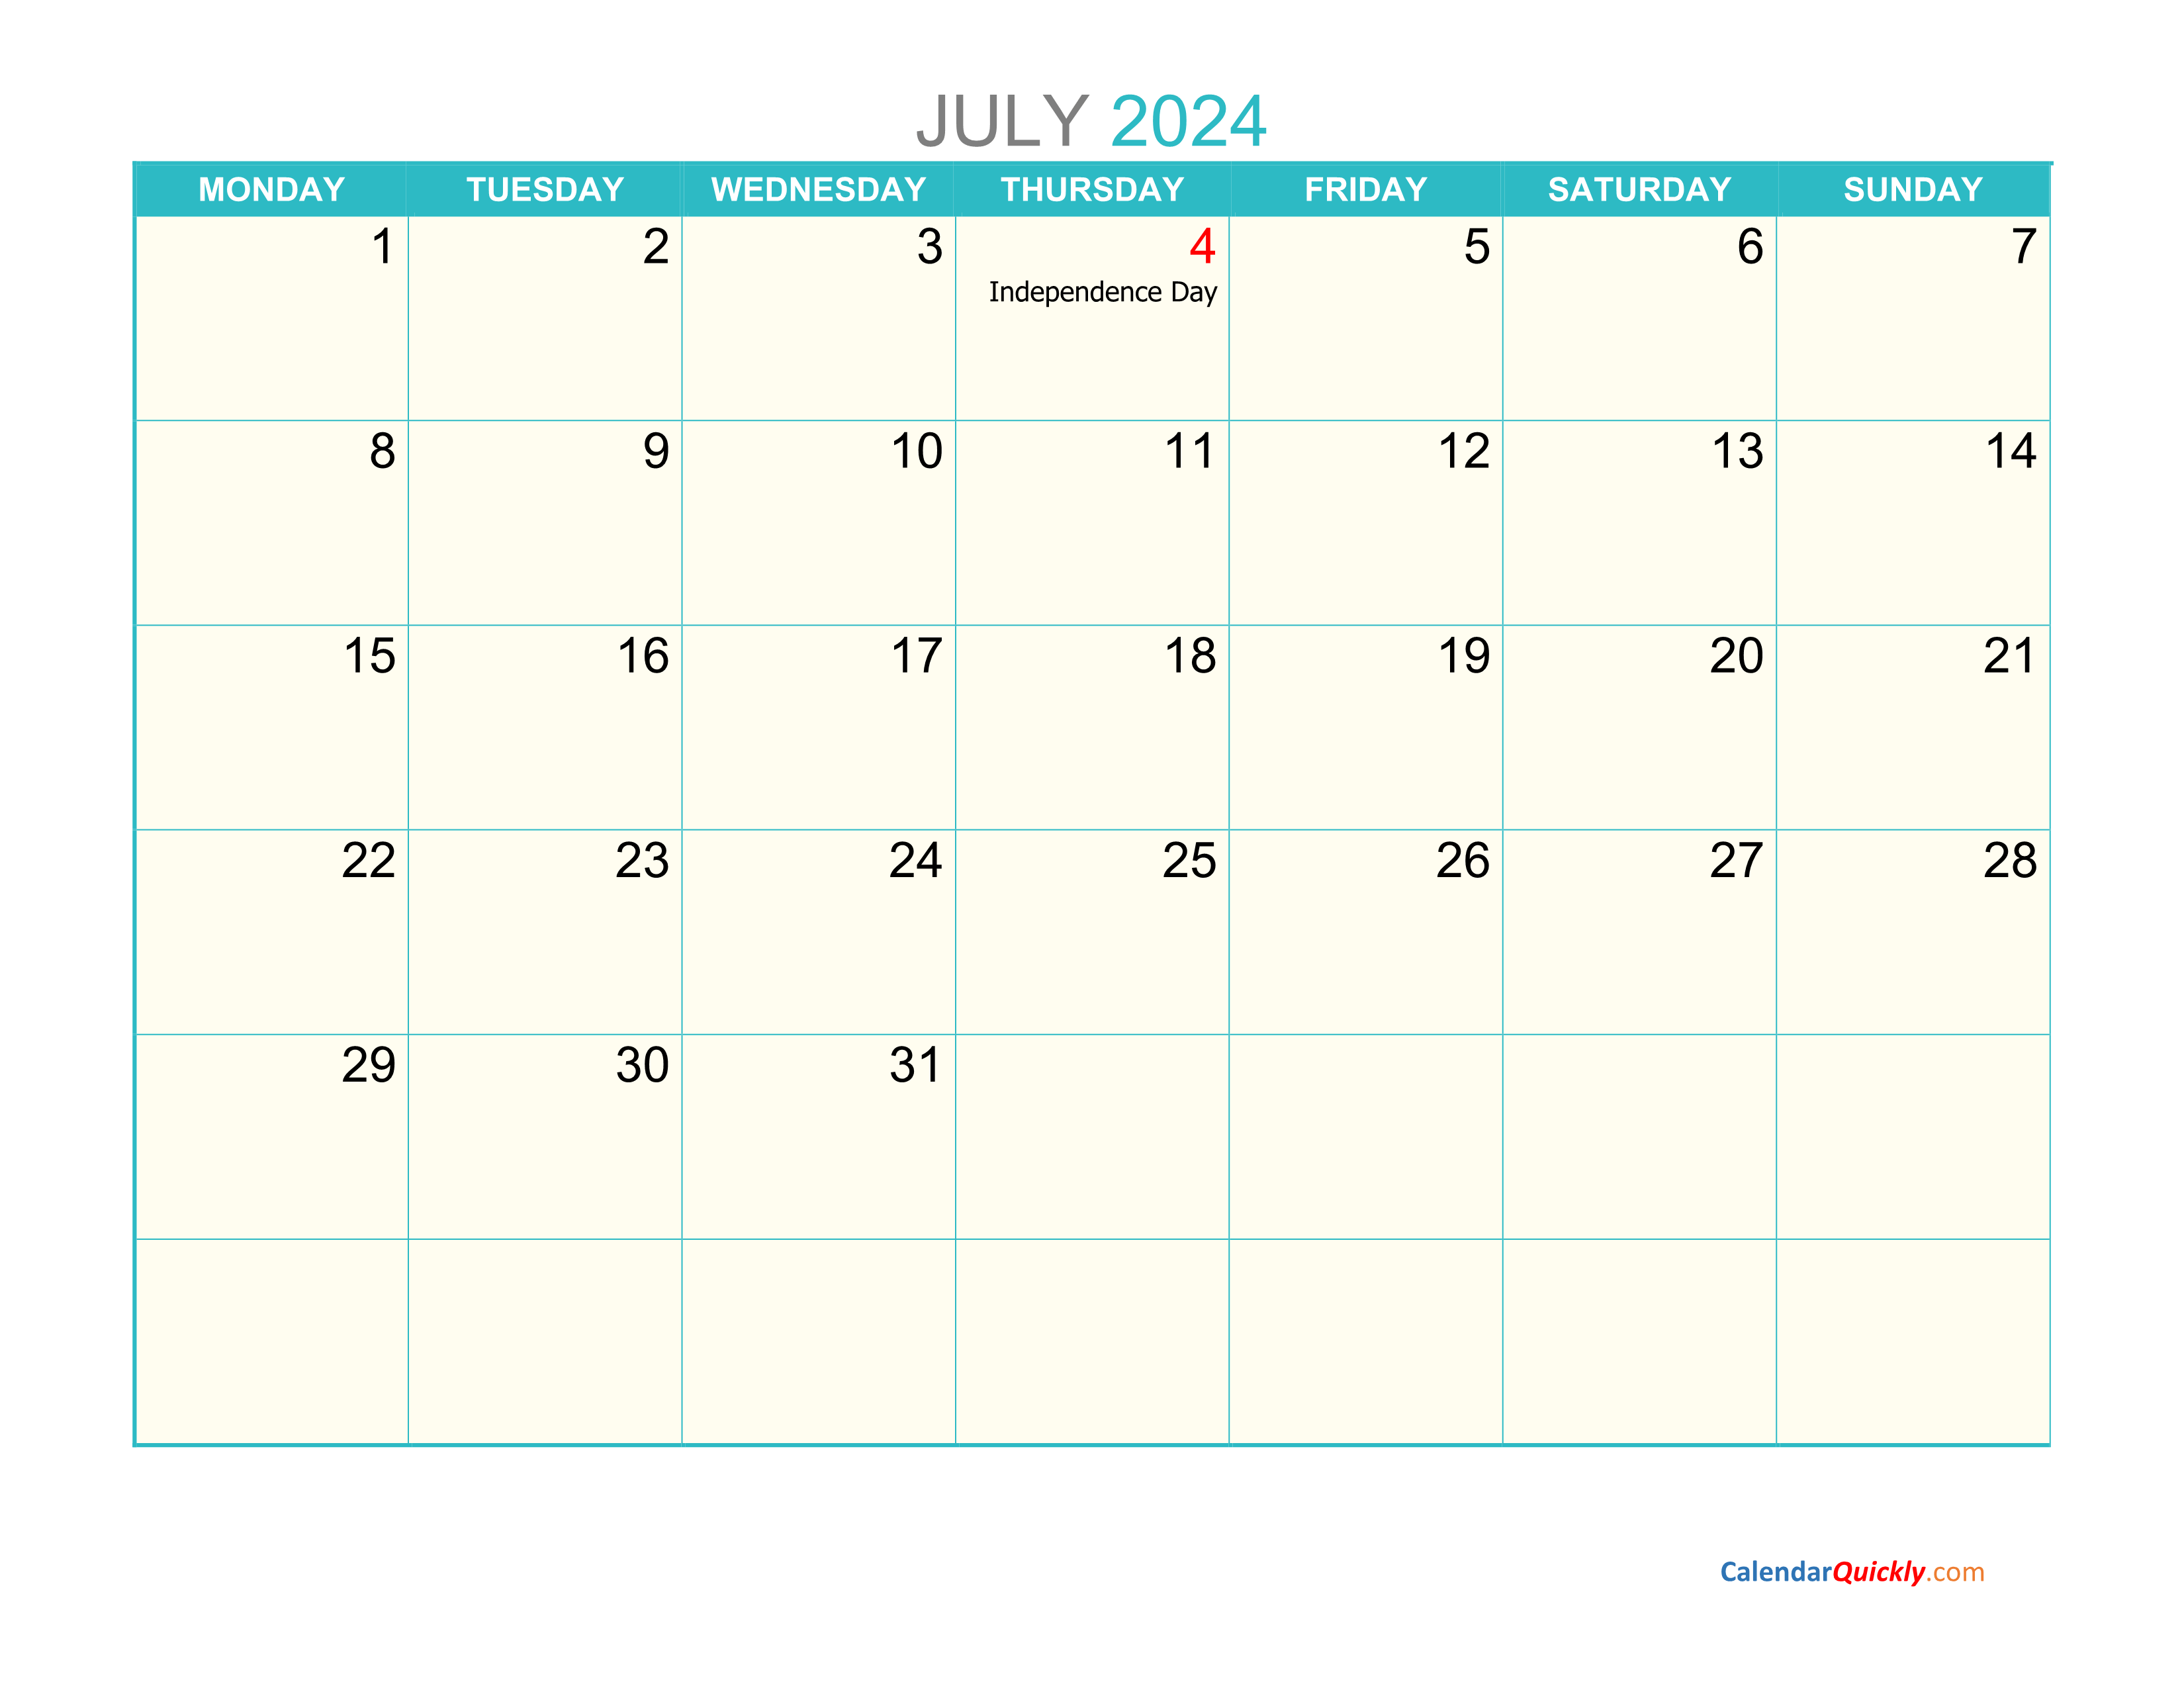 july-monday-2024-calendar-printable-calendar-quickly